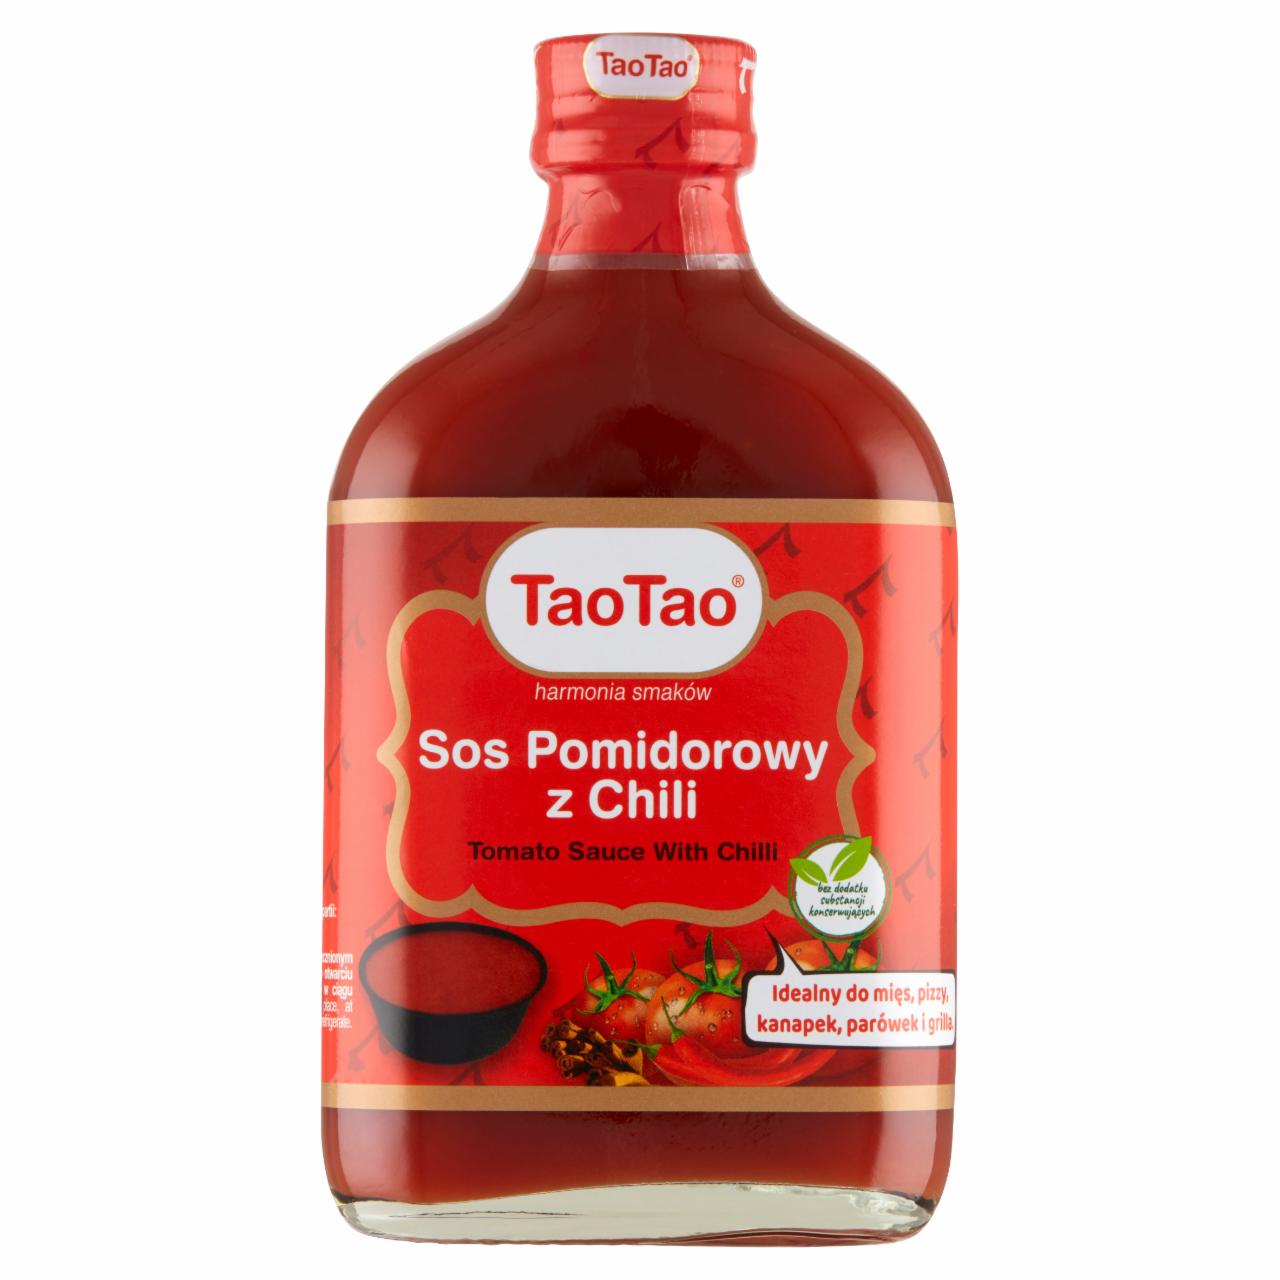 Zdjęcia - Tao Tao Sos pomidorowy z chili 175 ml